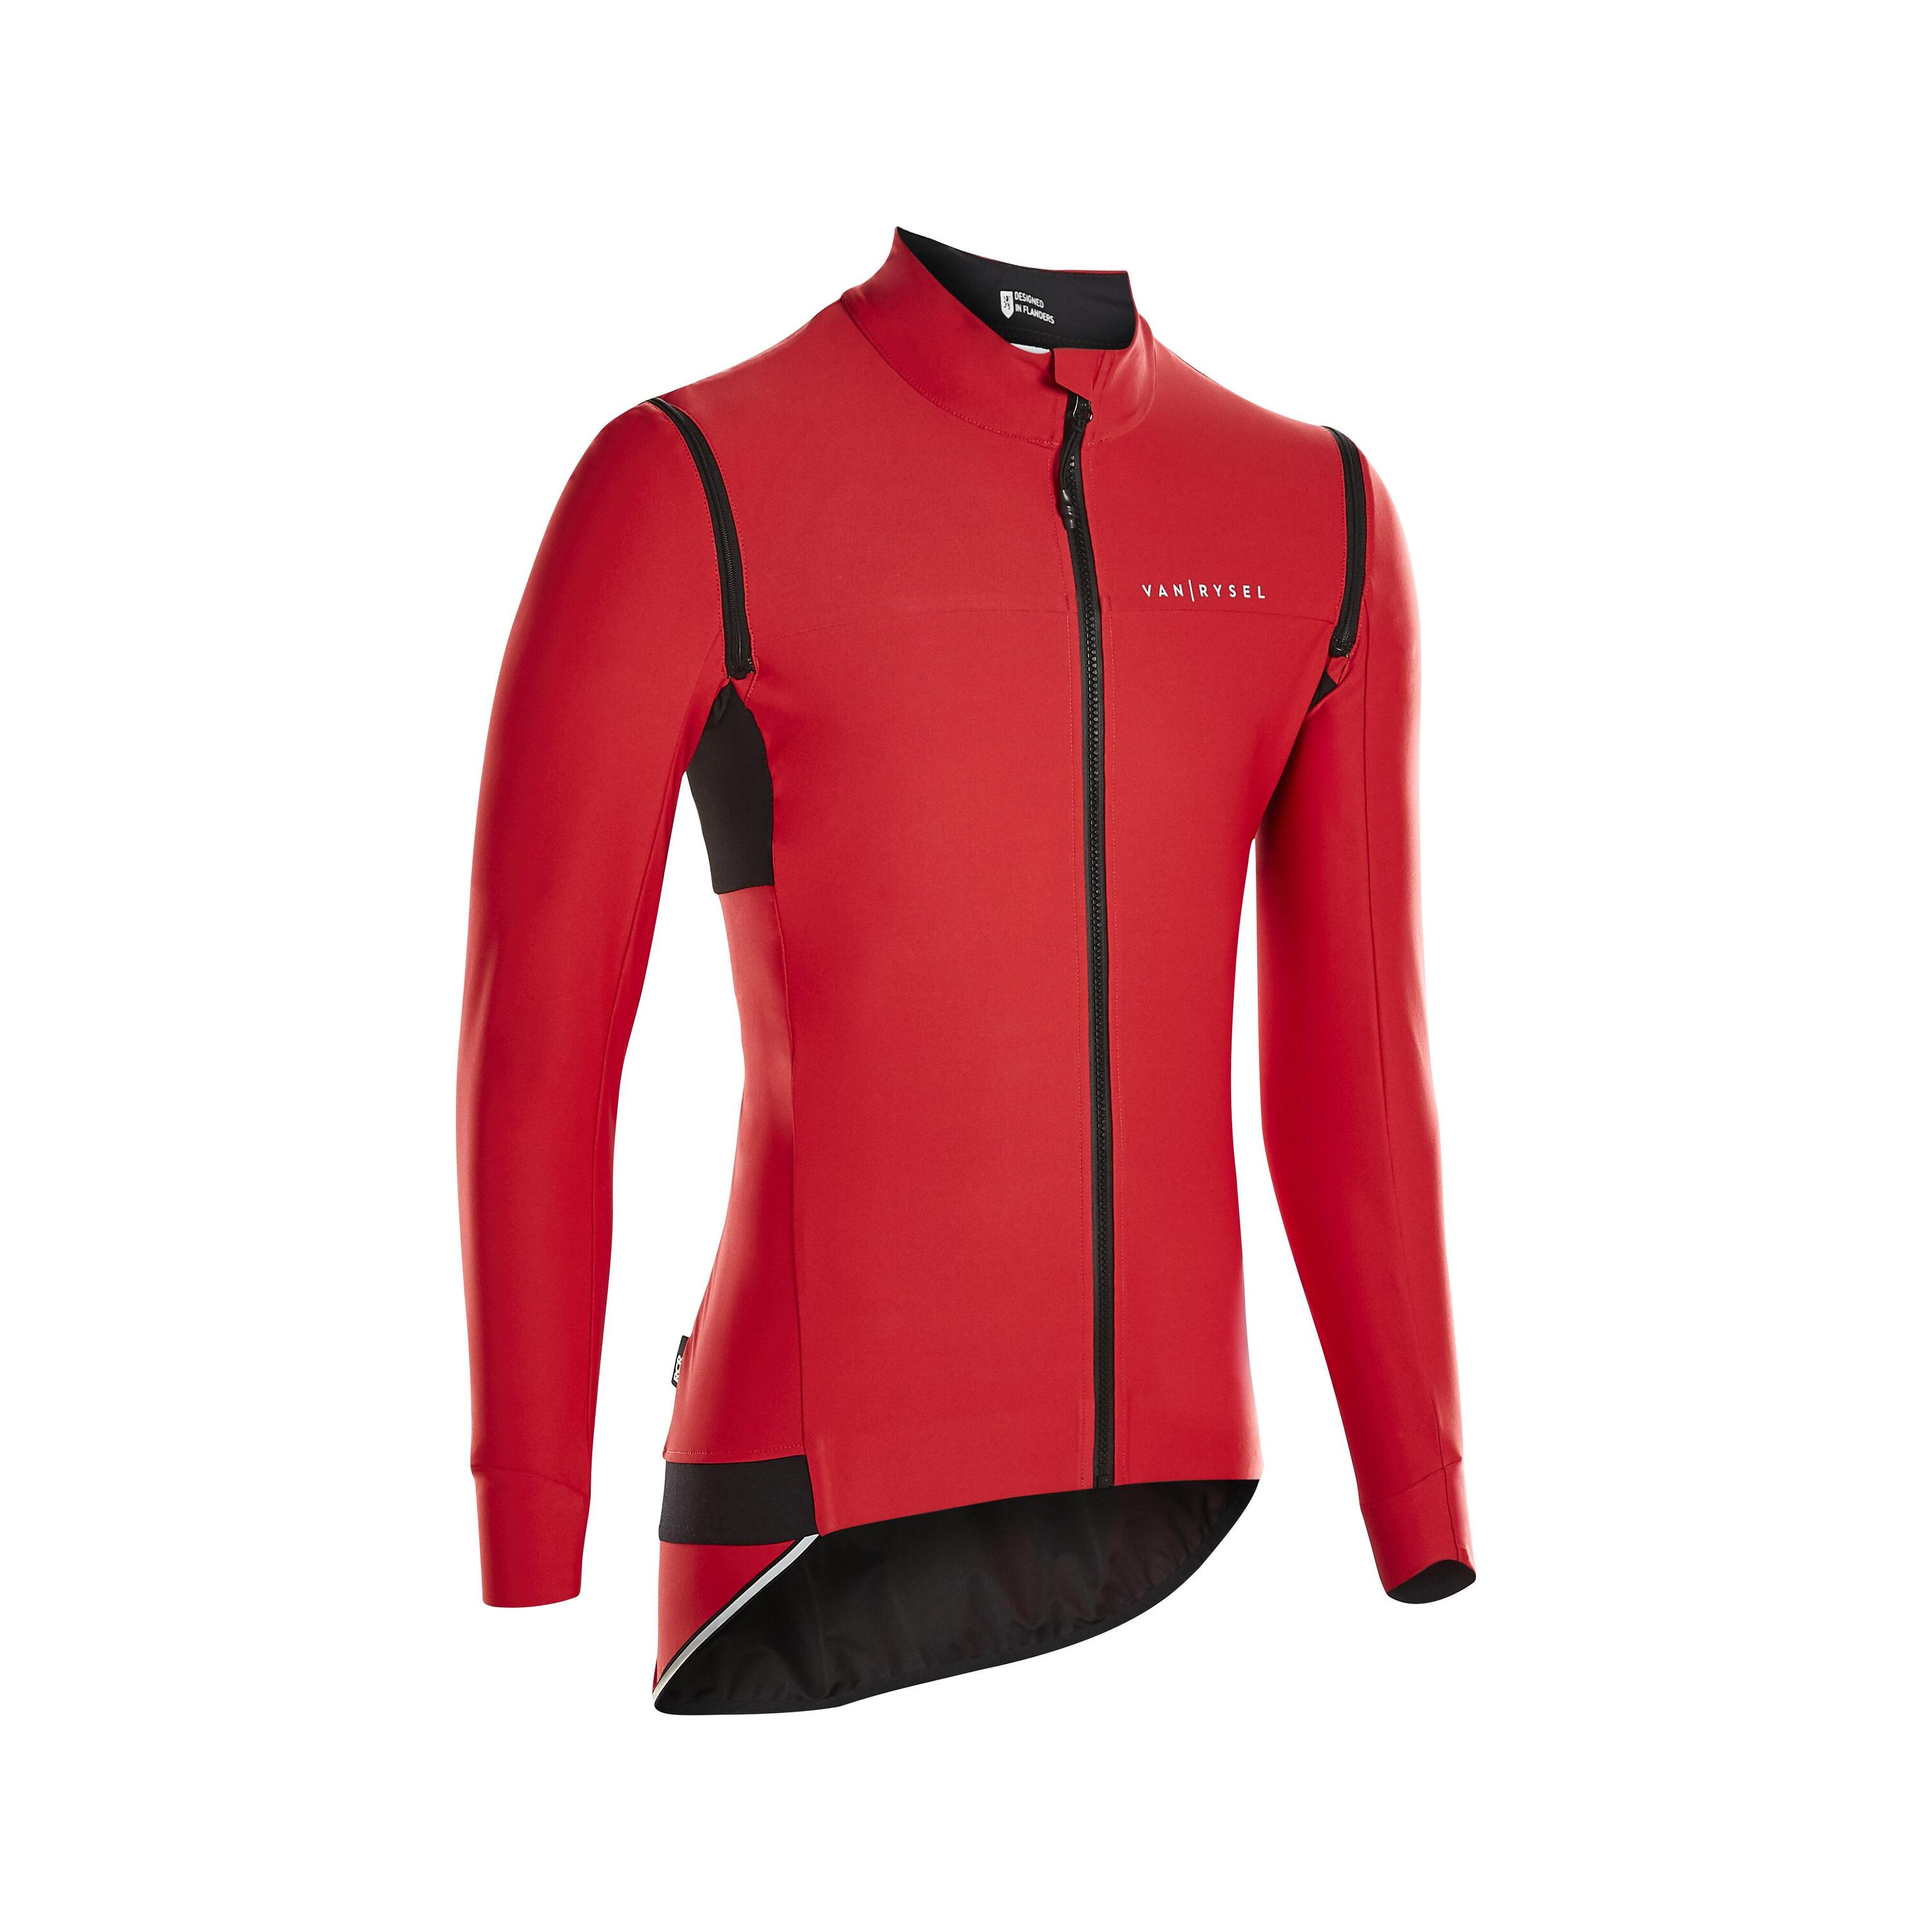 VAN RYSEL Men's Long-Sleeved Road Cycling Showerproof Convertible Jacket Racer - Red